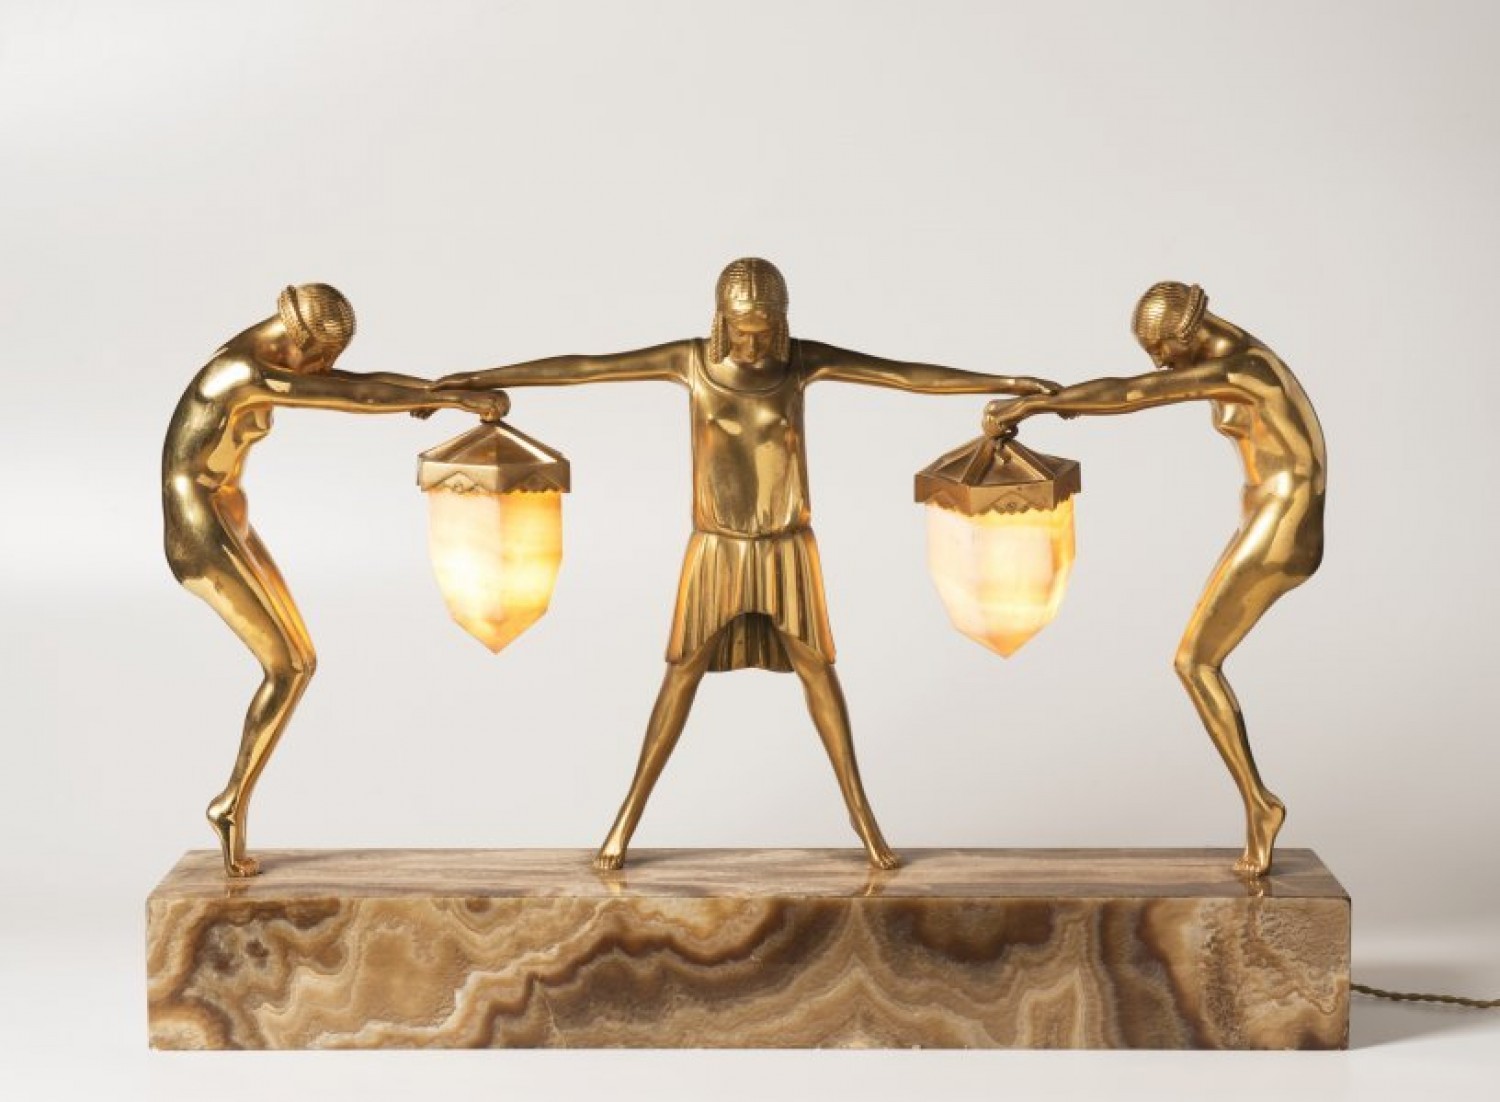 5/ Claire Jeanne Roberte Colinet: stolní lampa 20. léta 20. stol. zlacený bronz, mramor, onyx, 43 cm x 64,5 cm dosažená cena: 421 600 Kč Arthouse Hejtmánek 30. 11. 2017